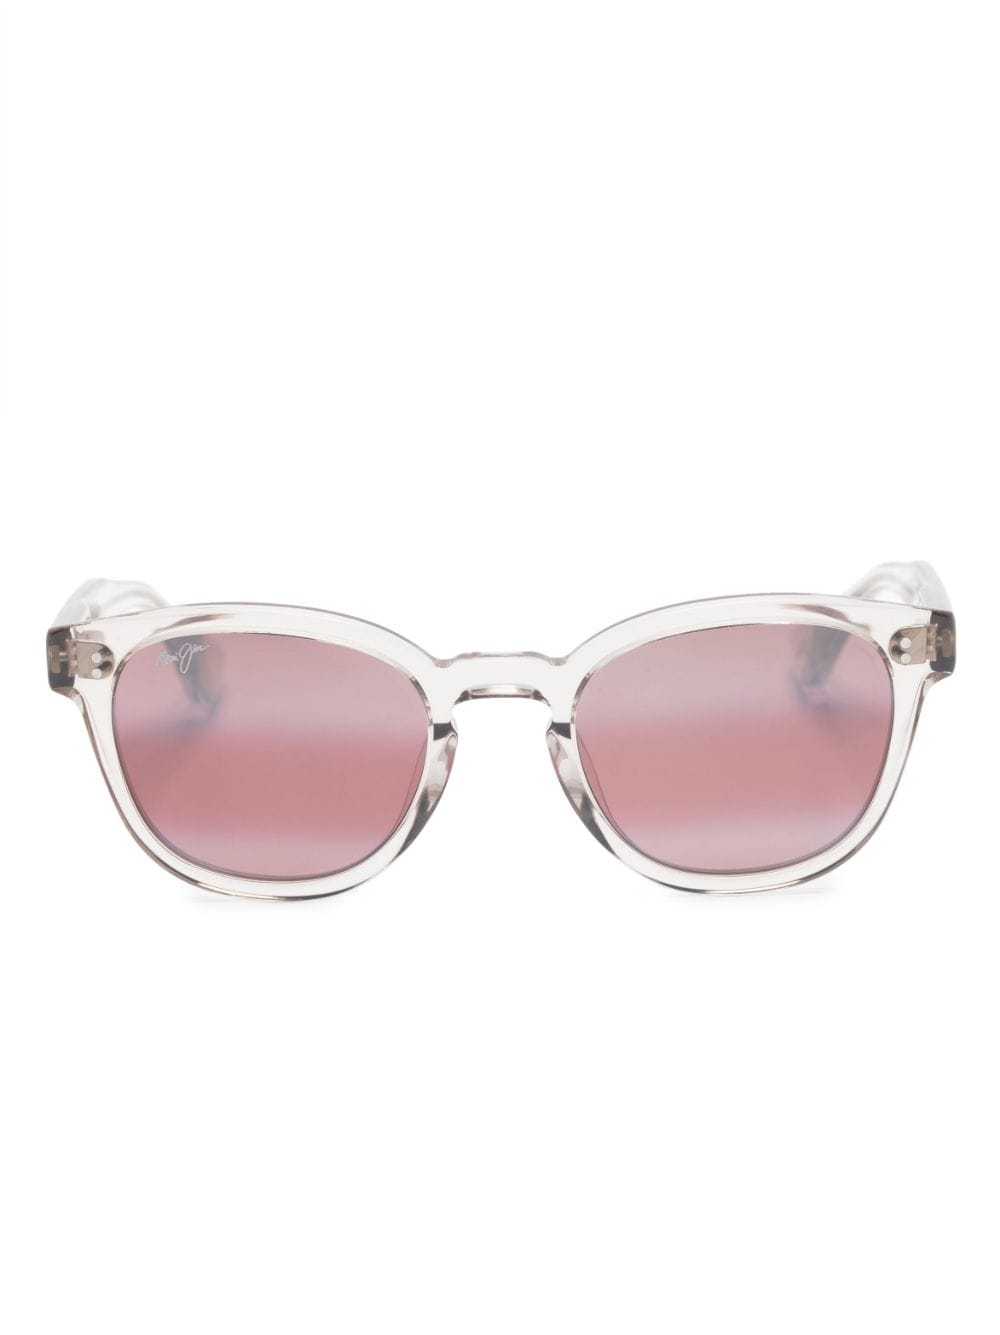 Maui Jim square-frame tinted-lenses sunglasses